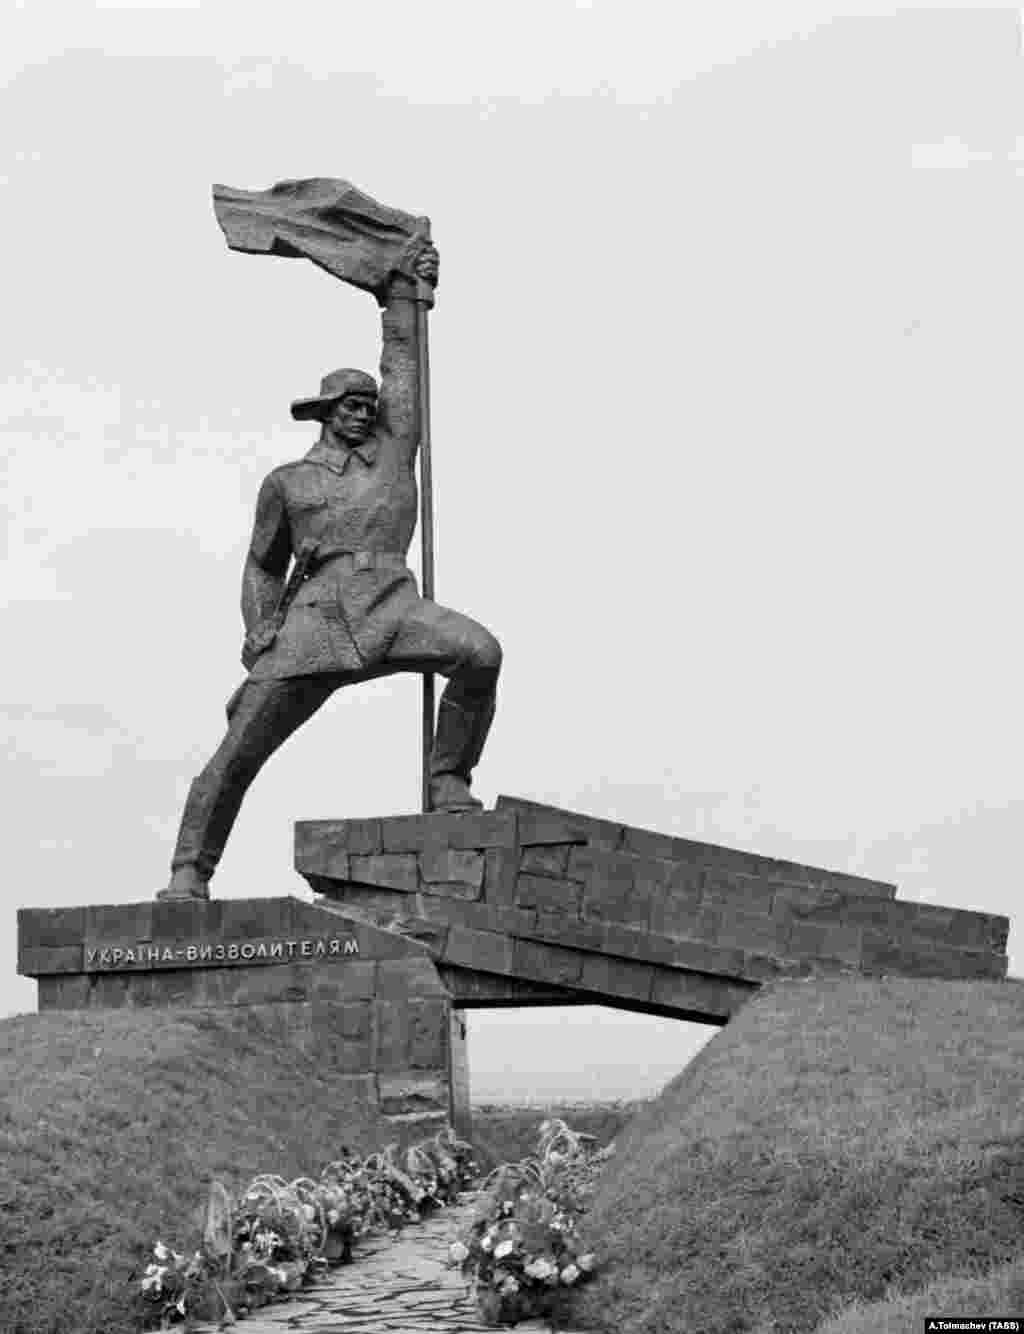 Un monument din epoca sovietică dedicat &bdquo;Eliberatorilor Ucrainei&quot; din Ujhorod, în vestul Ucrainei, aproape de granița cu Slovacia. Monumentul&nbsp;a fost dărâmat în noiembrie 2022.